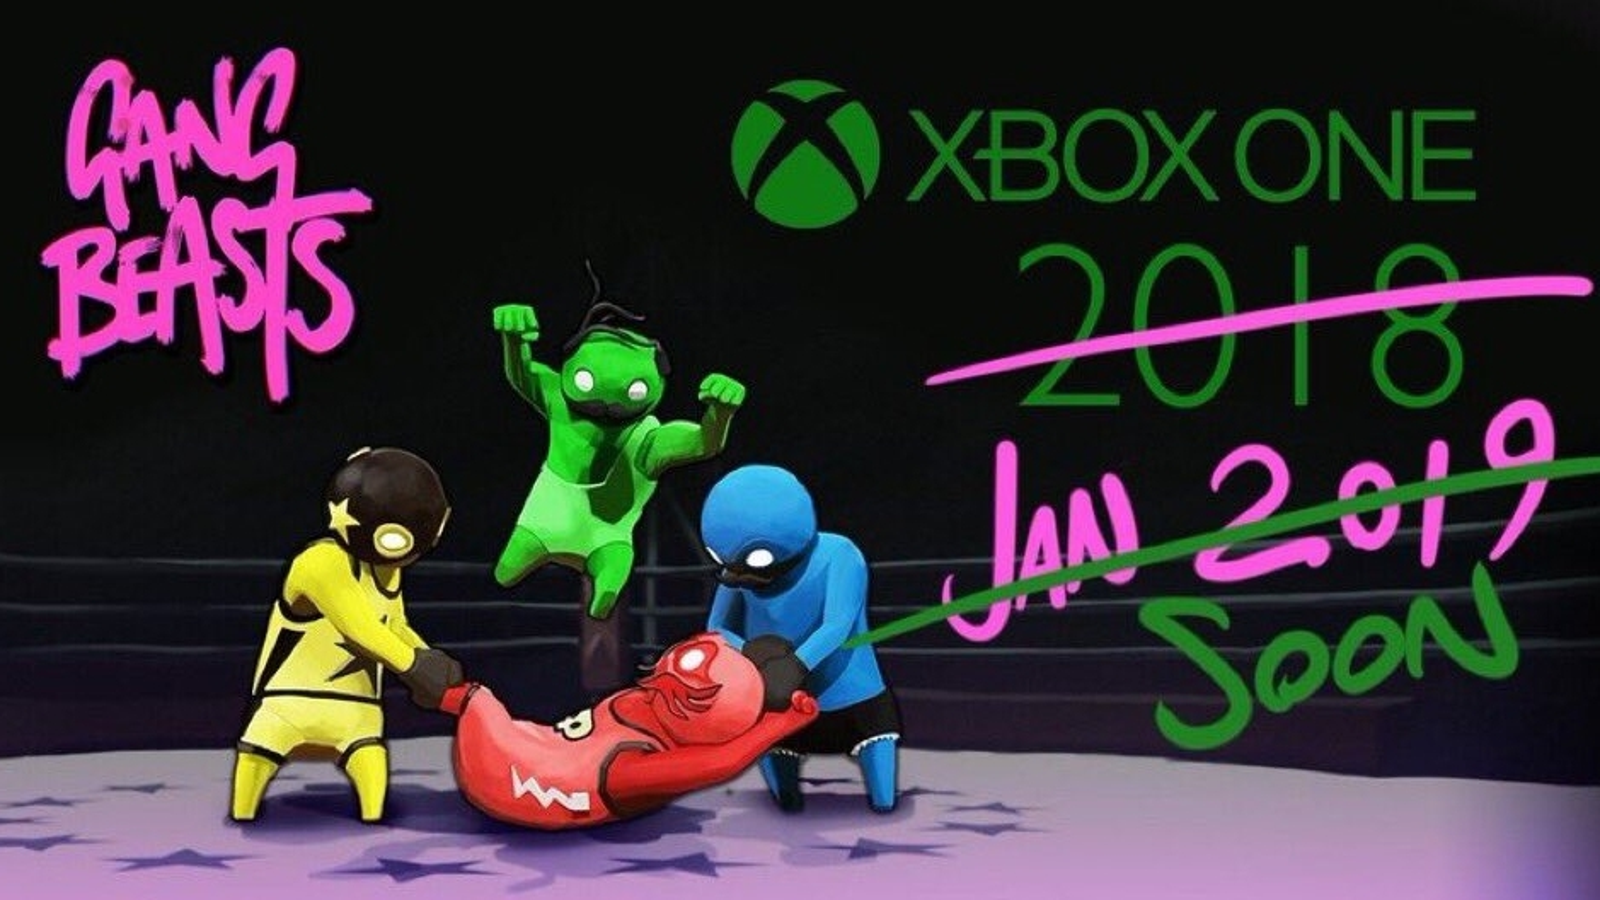 De lucht krassen Mok Gang Beasts for Xbox One delayed yet again | Eurogamer.net